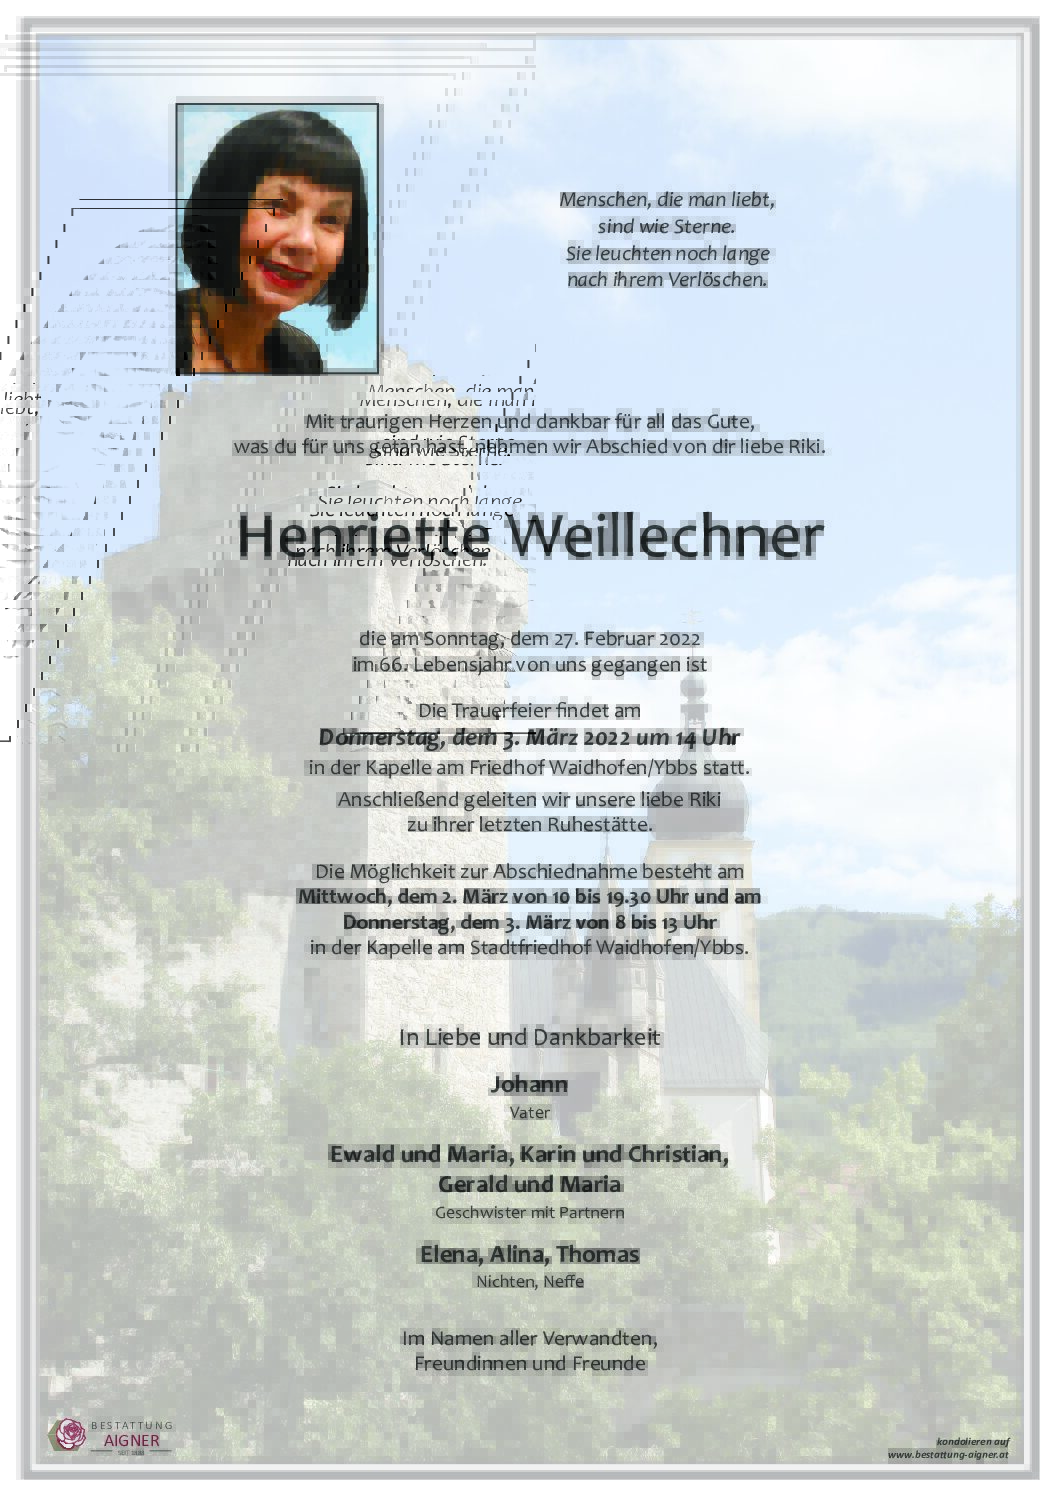 Henriette Weillechner